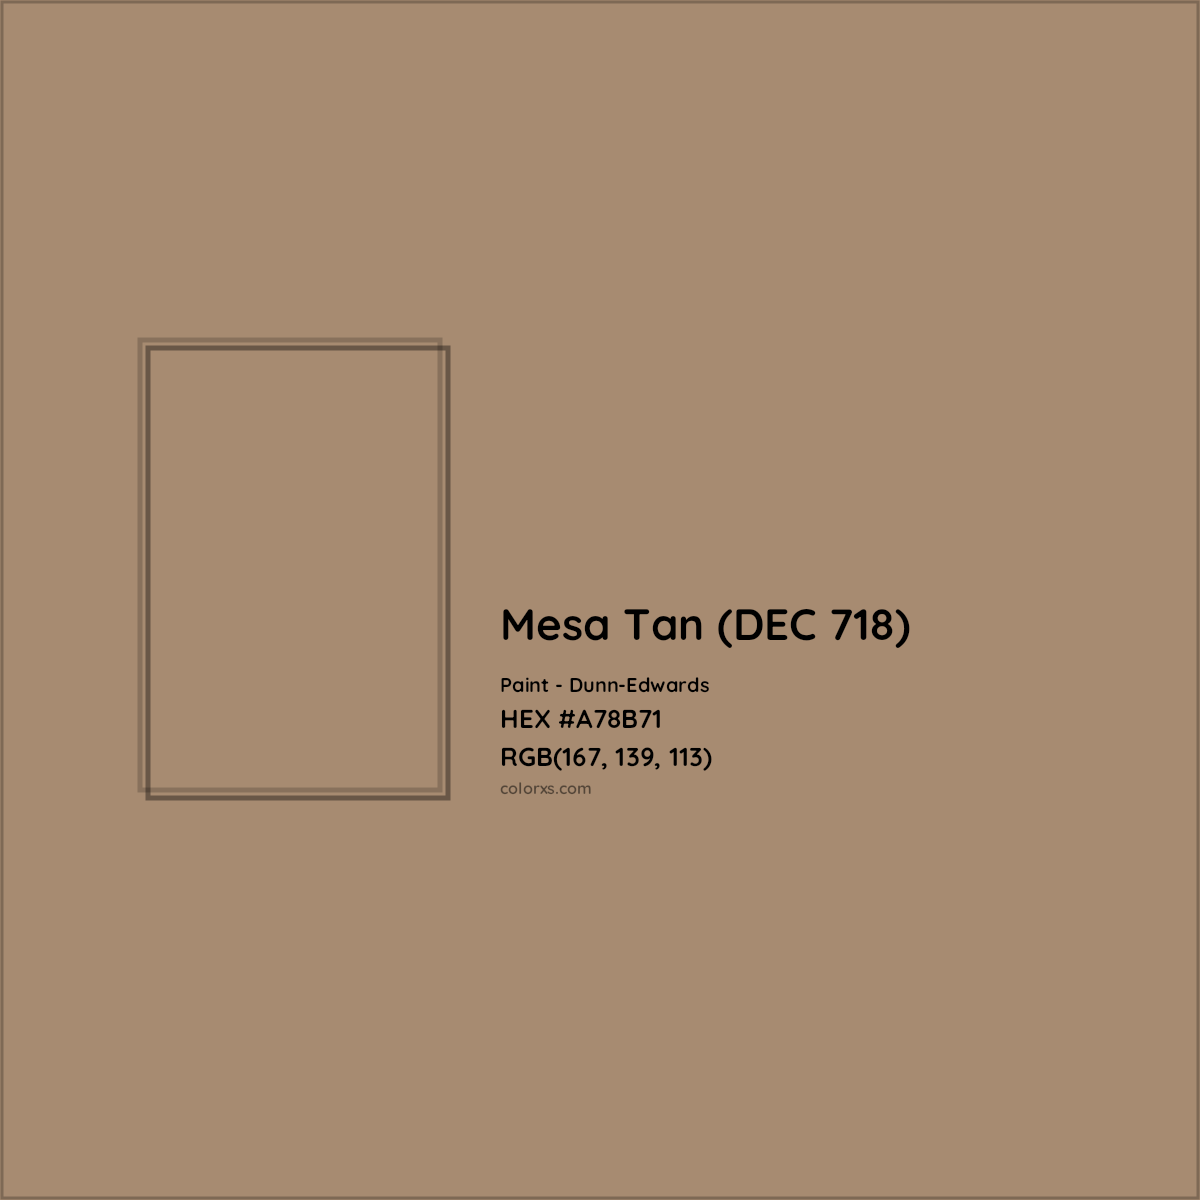 HEX #A78B71 Mesa Tan (DEC 718) Paint Dunn-Edwards - Color Code